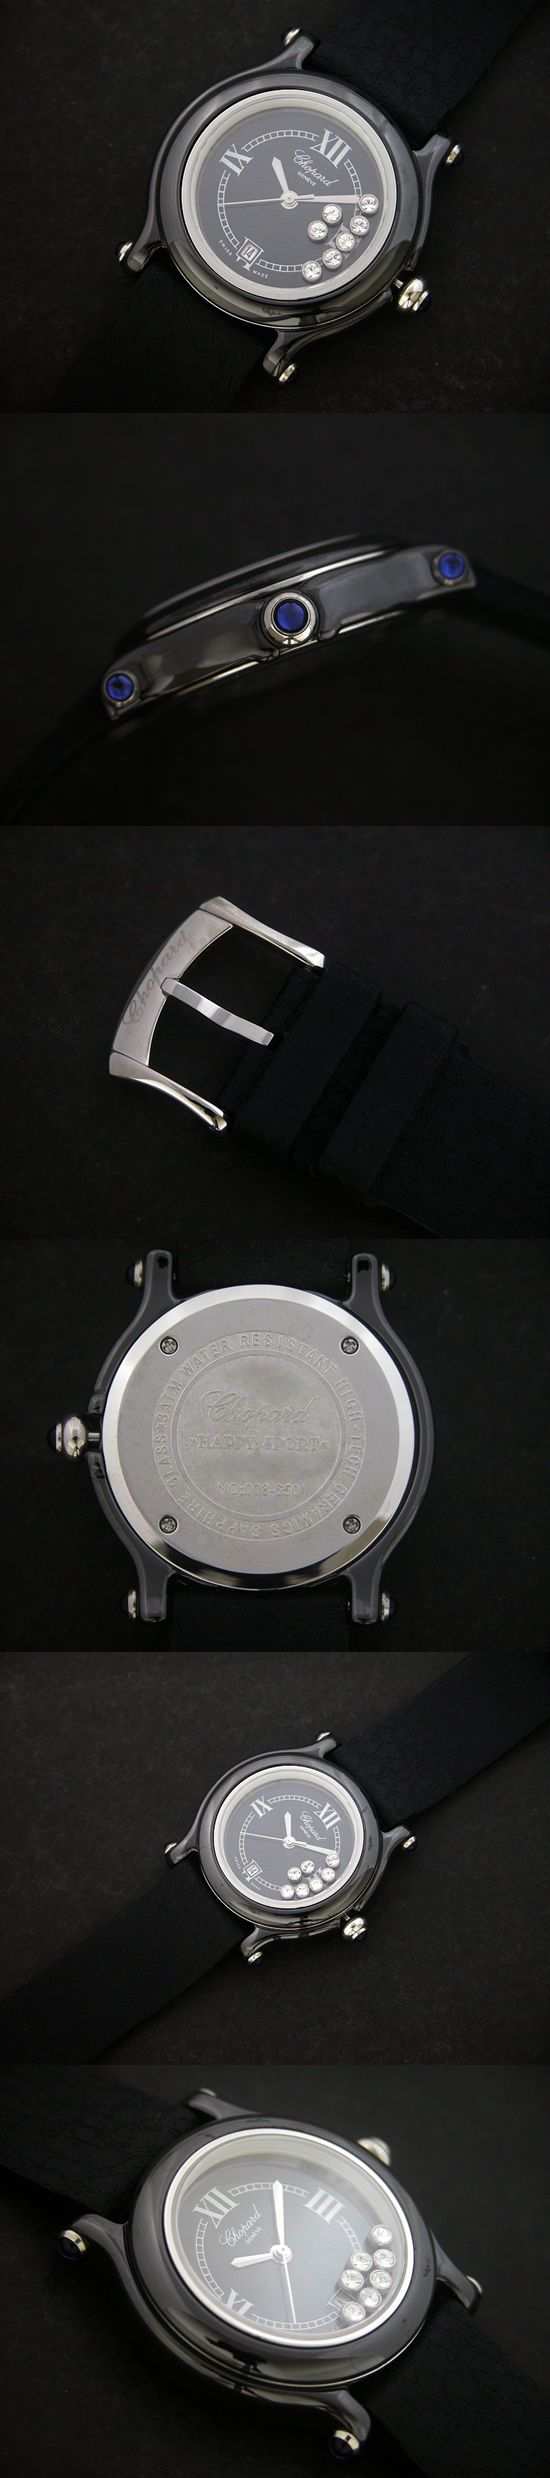 おしゃれなブランド時計がショパール-CHOPARD-ハッピースポーツ27/8245-23-aa  女性用腕時計を提供します.